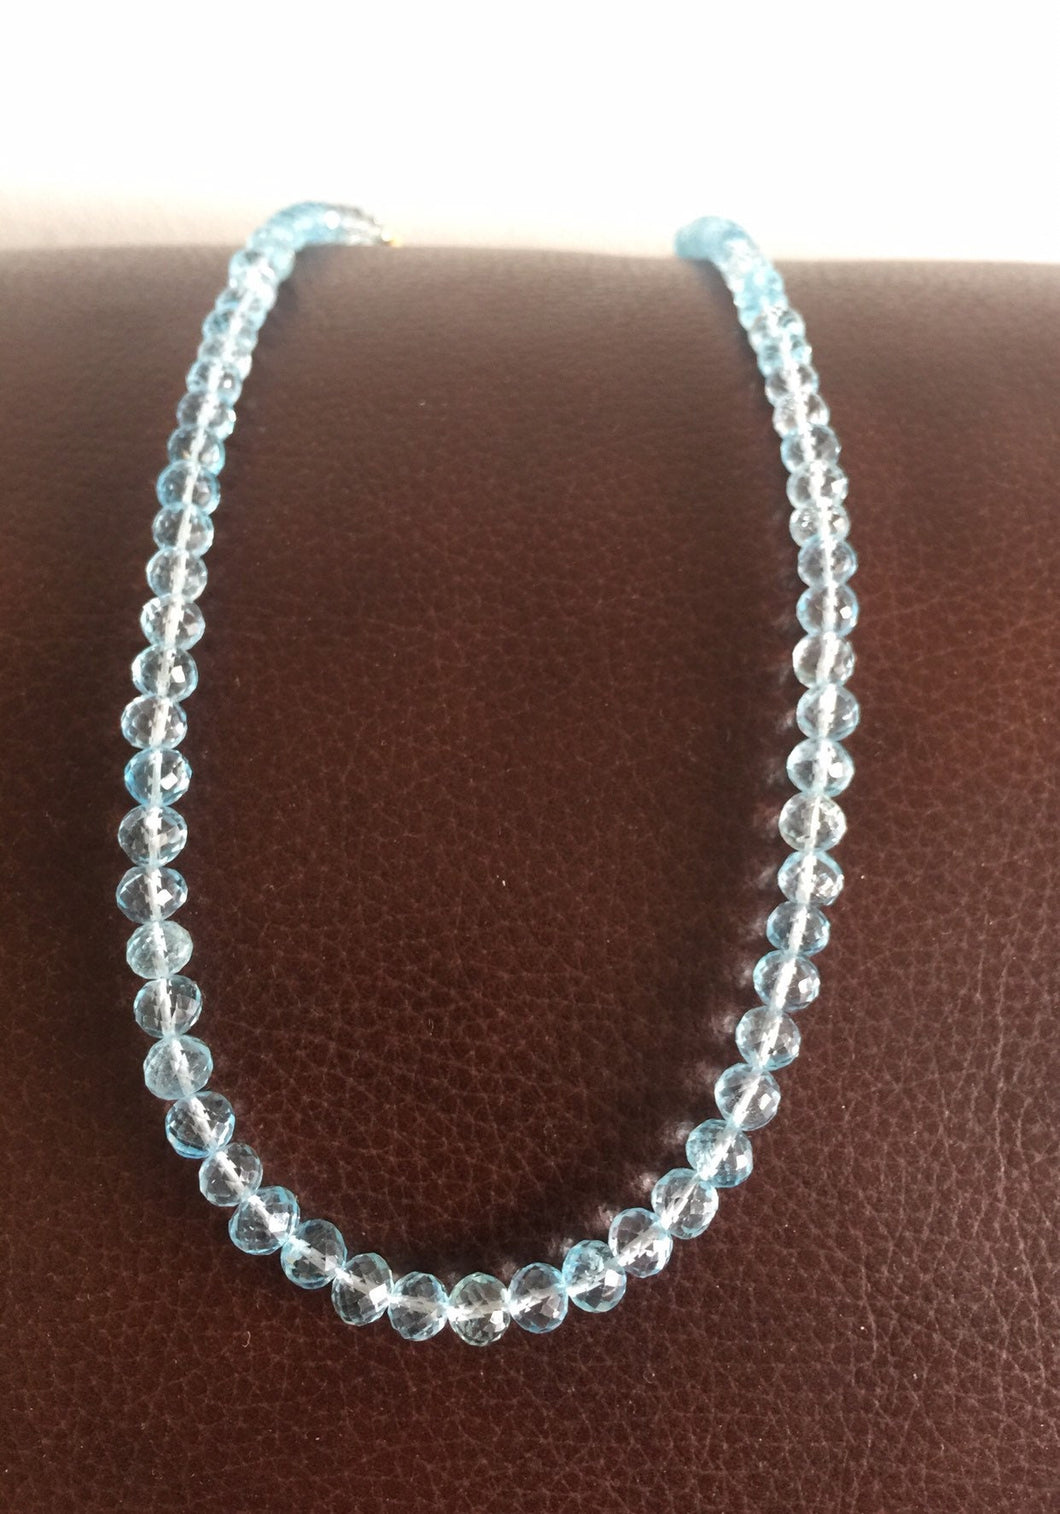 stone beads necklace,blue topaz necklace,topaz necklace,silver necklace, sterling silver necklace ,cut stone necklace